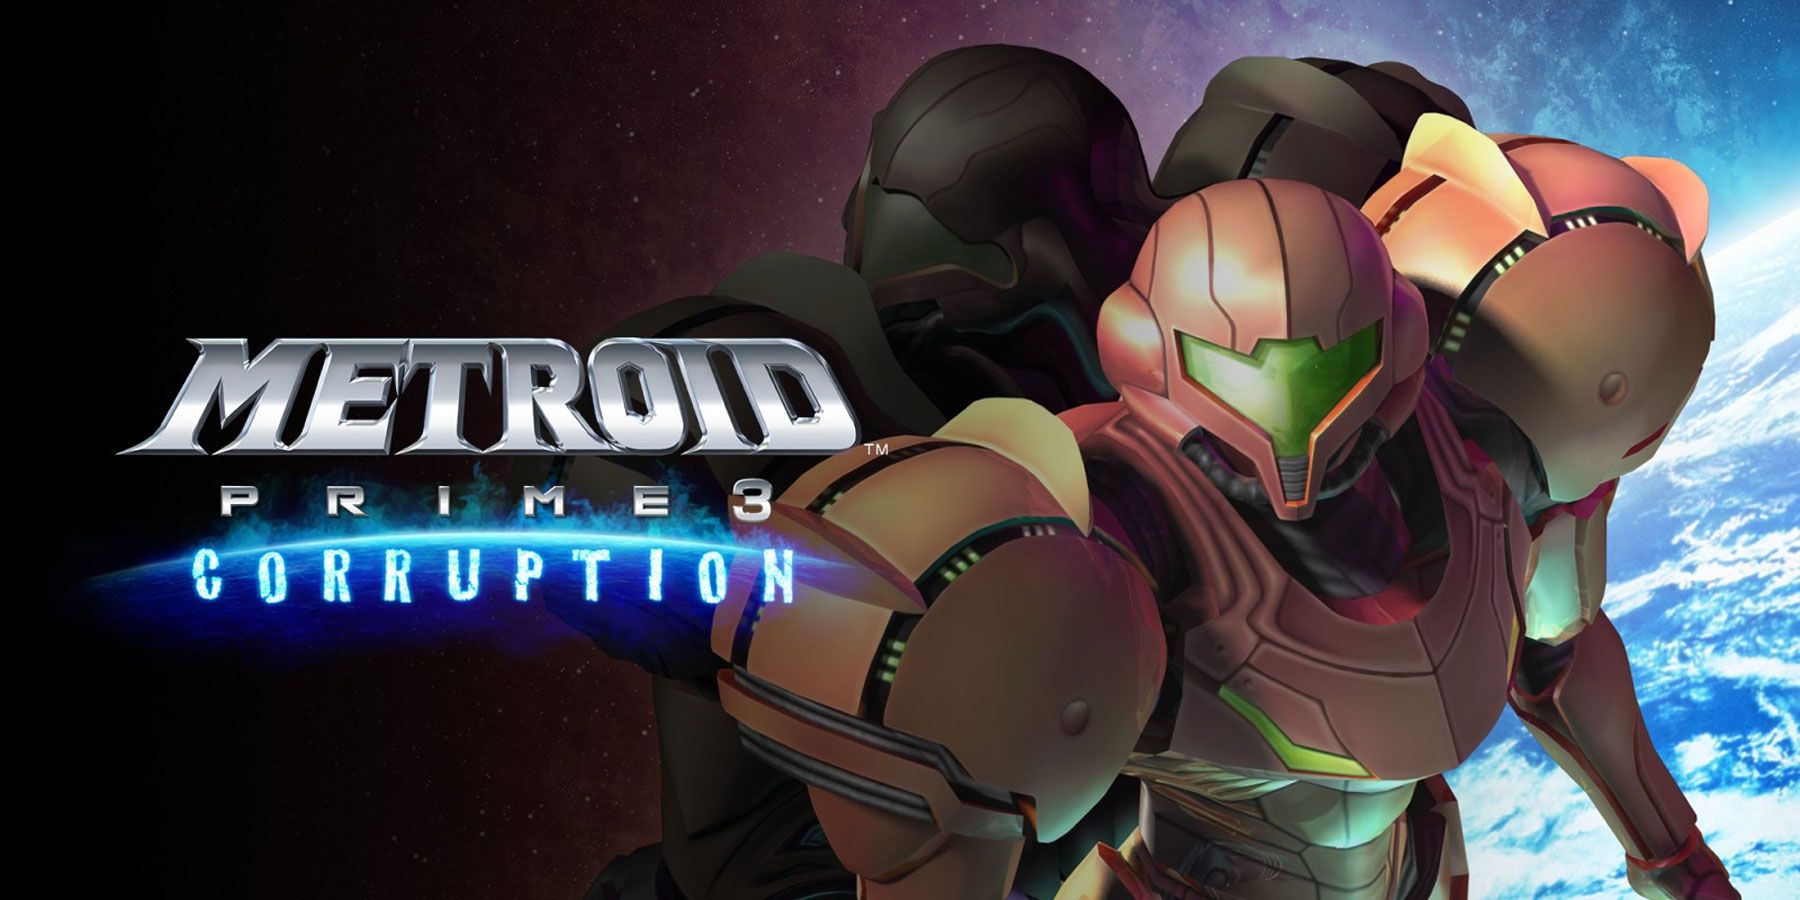 تم طرح Metroid Prime 3 في الأصل كلعبة عالم مفتوح